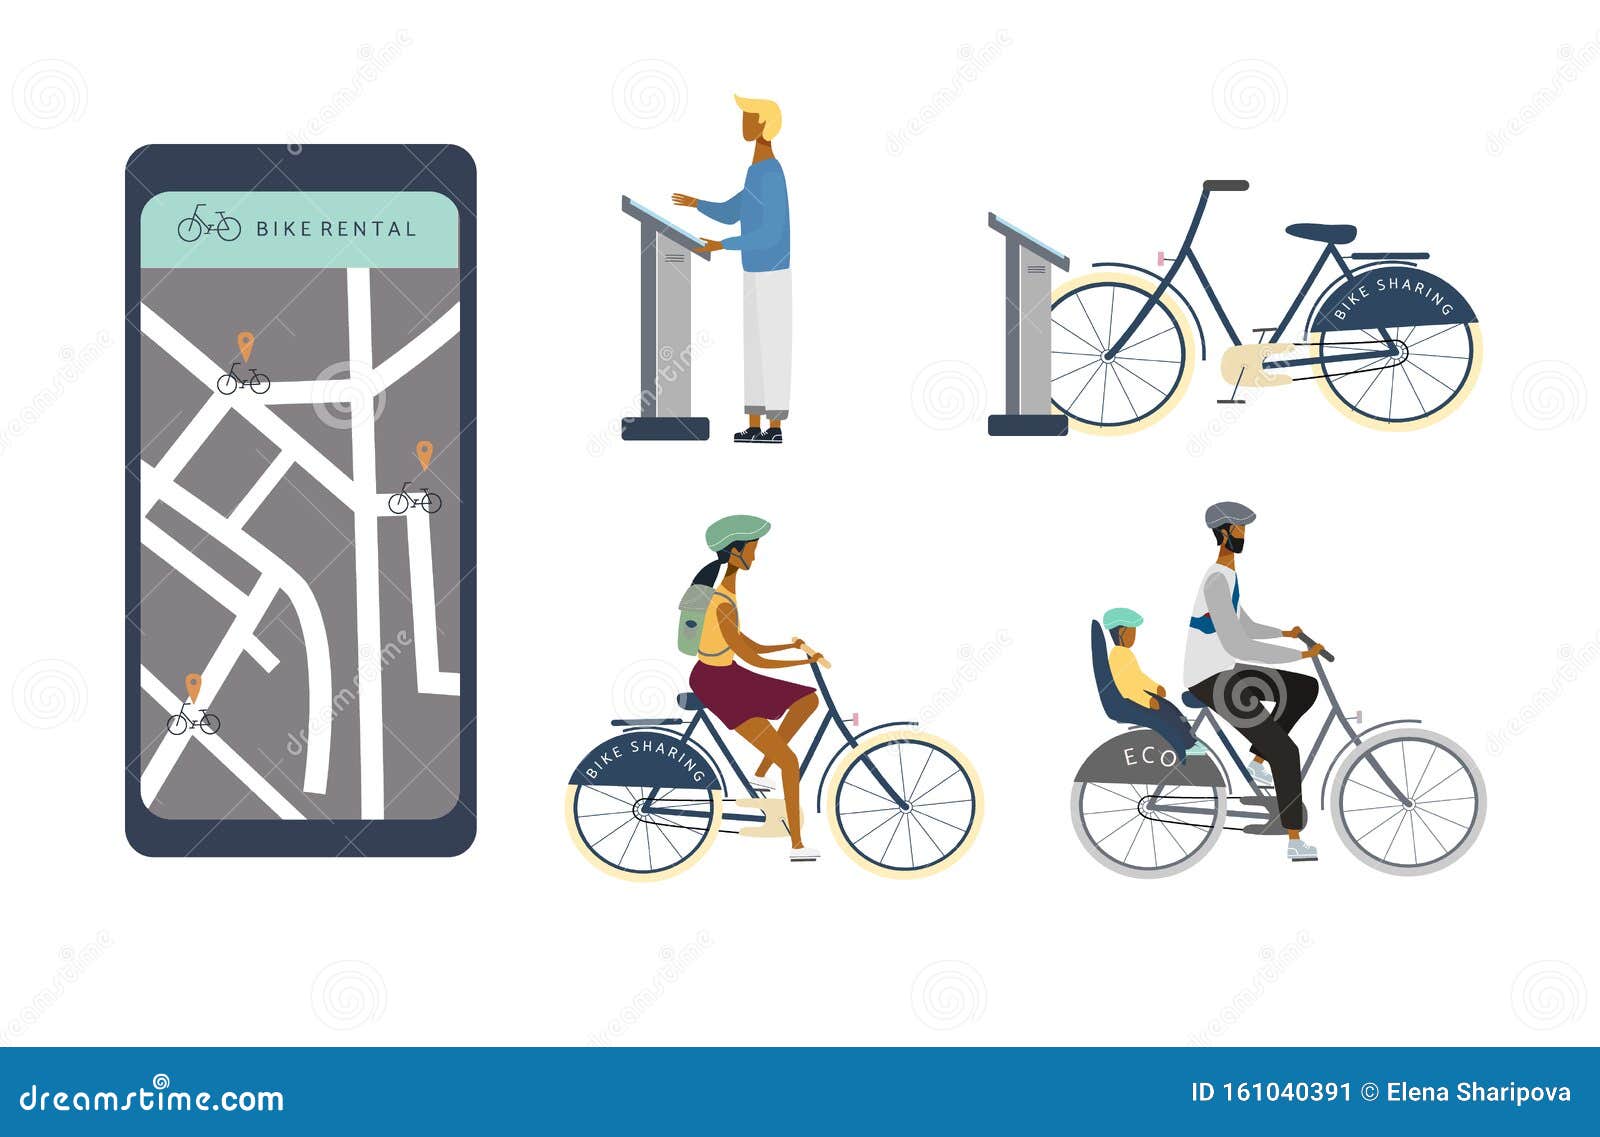 Bike Sharing or Rental Concept Set